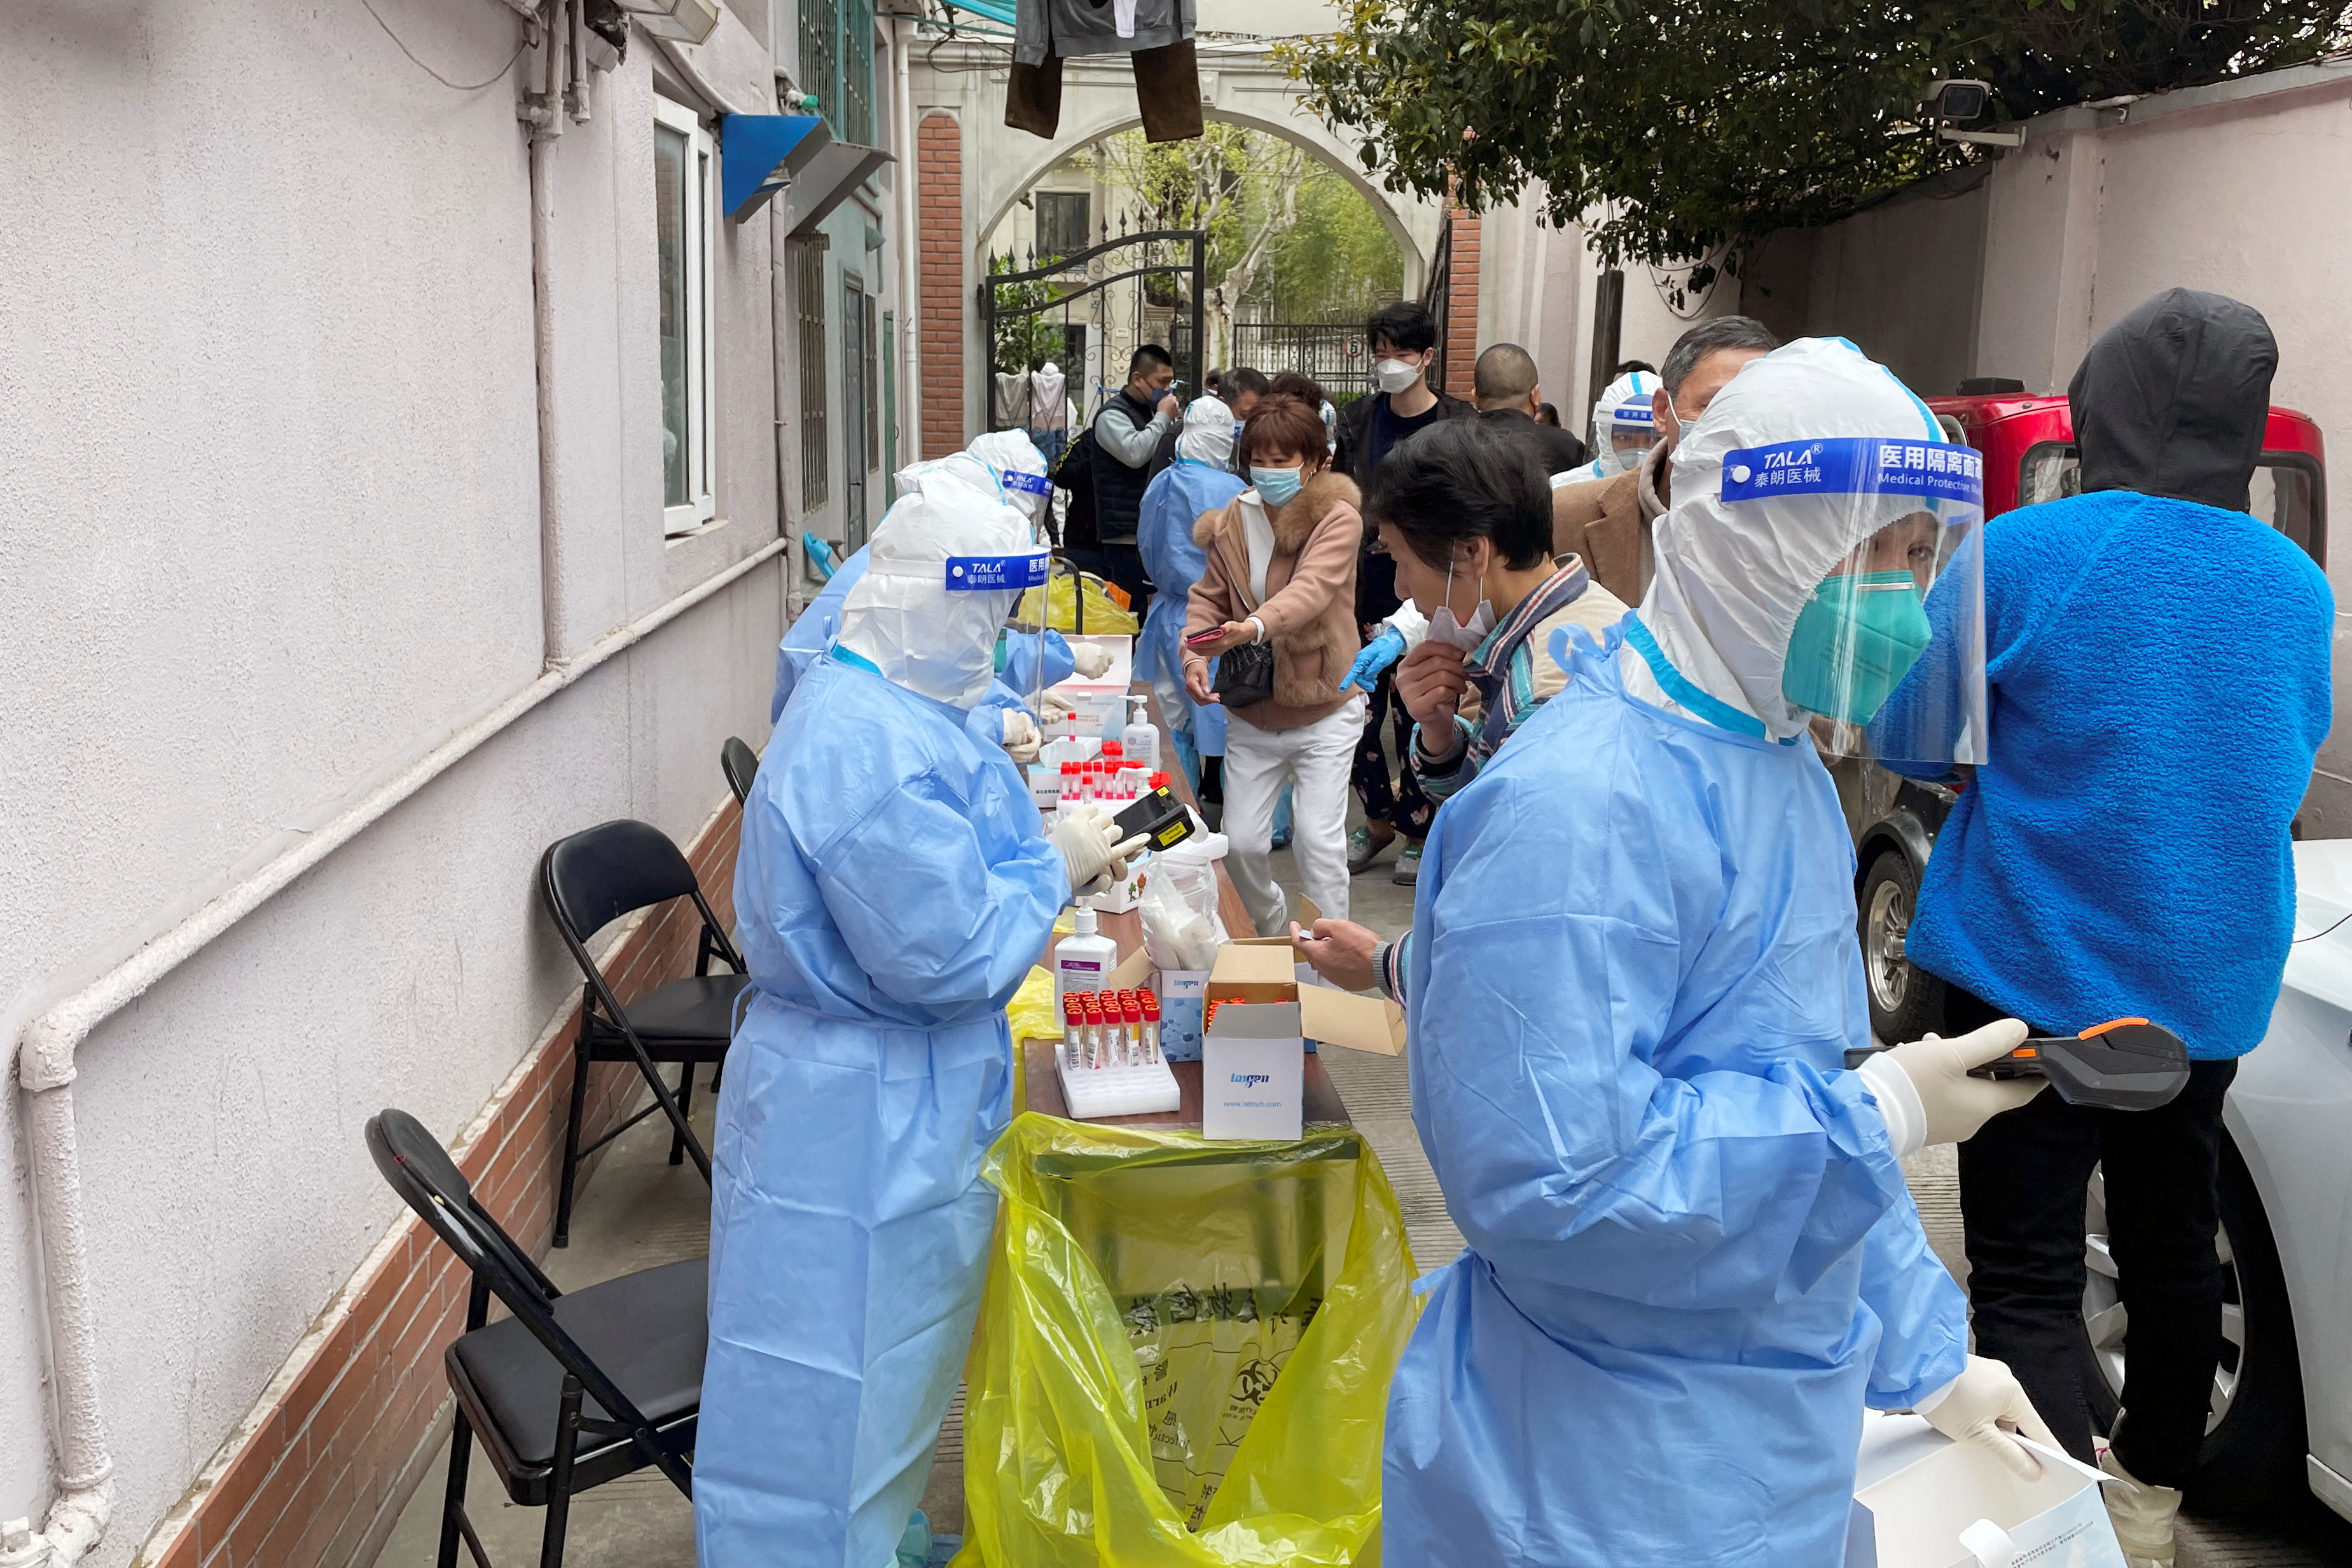 Los trabajadores médicos con trajes protectores administran testeos de PCR a los residentes en un complejo residencial, mientras comienza la segunda etapa de un bloqueo de dos etapas para frenar la propagación de la enfermedad por coronavirus (COVID-19) en Shanghái, China, el 1 de abril de 2022. REUTERS /Brenda Goh
